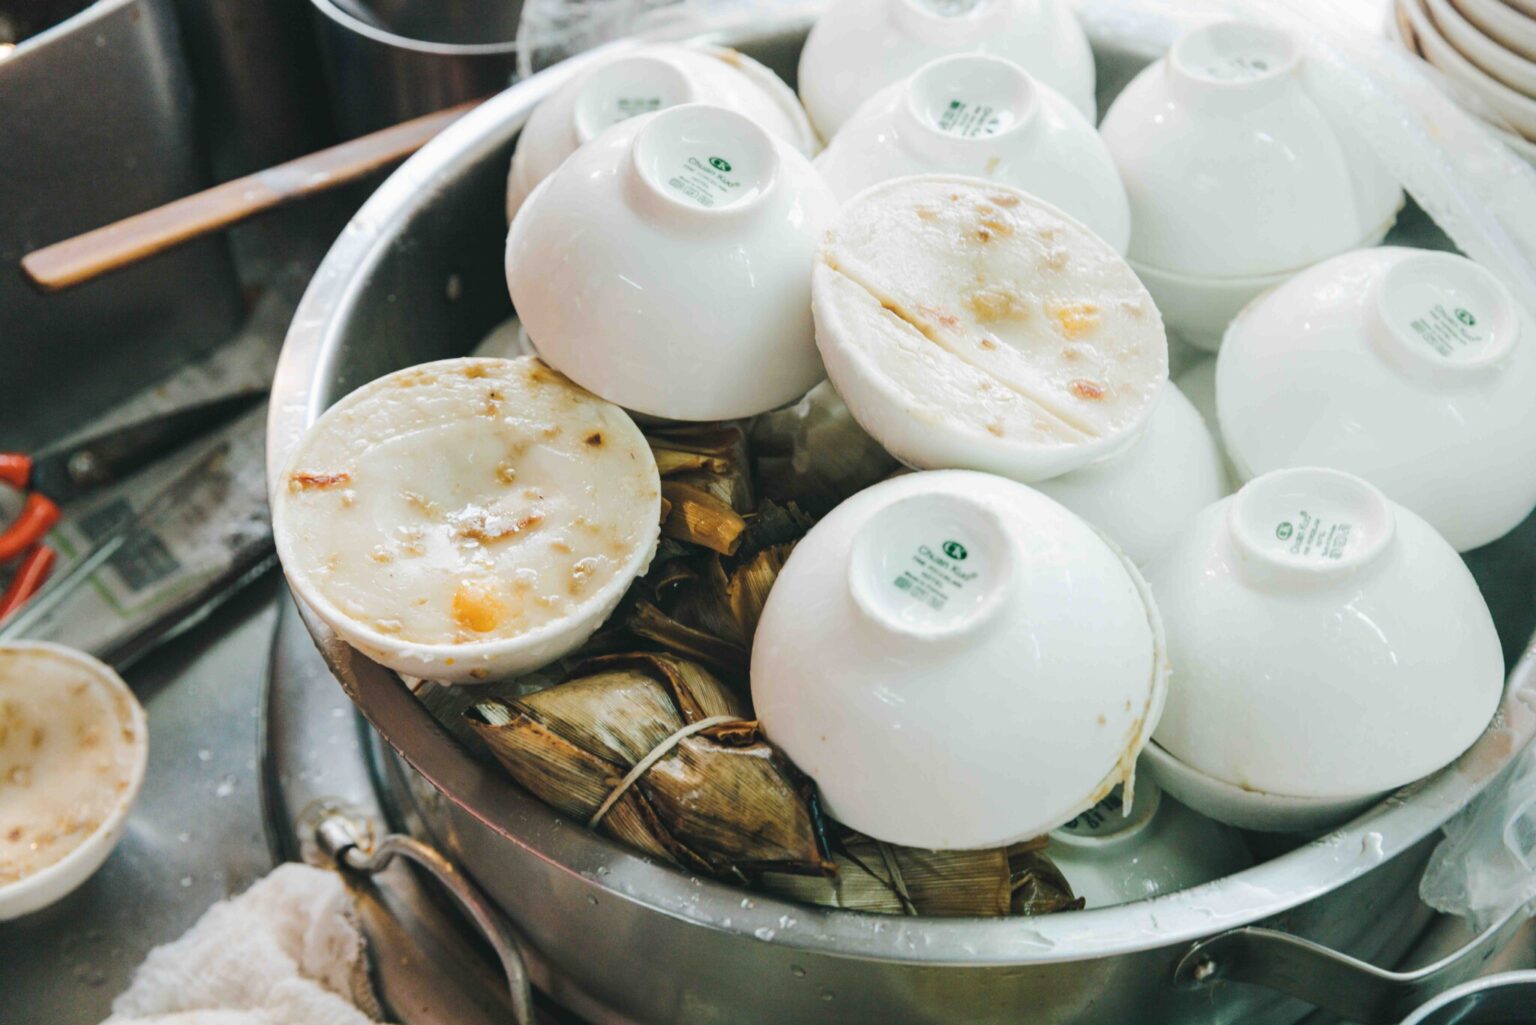 立ち込める湯気の正体は...。店頭には米粉をすり潰してエビや椎茸などと蒸した碗粿（ワーグイ）という伝統料理が。